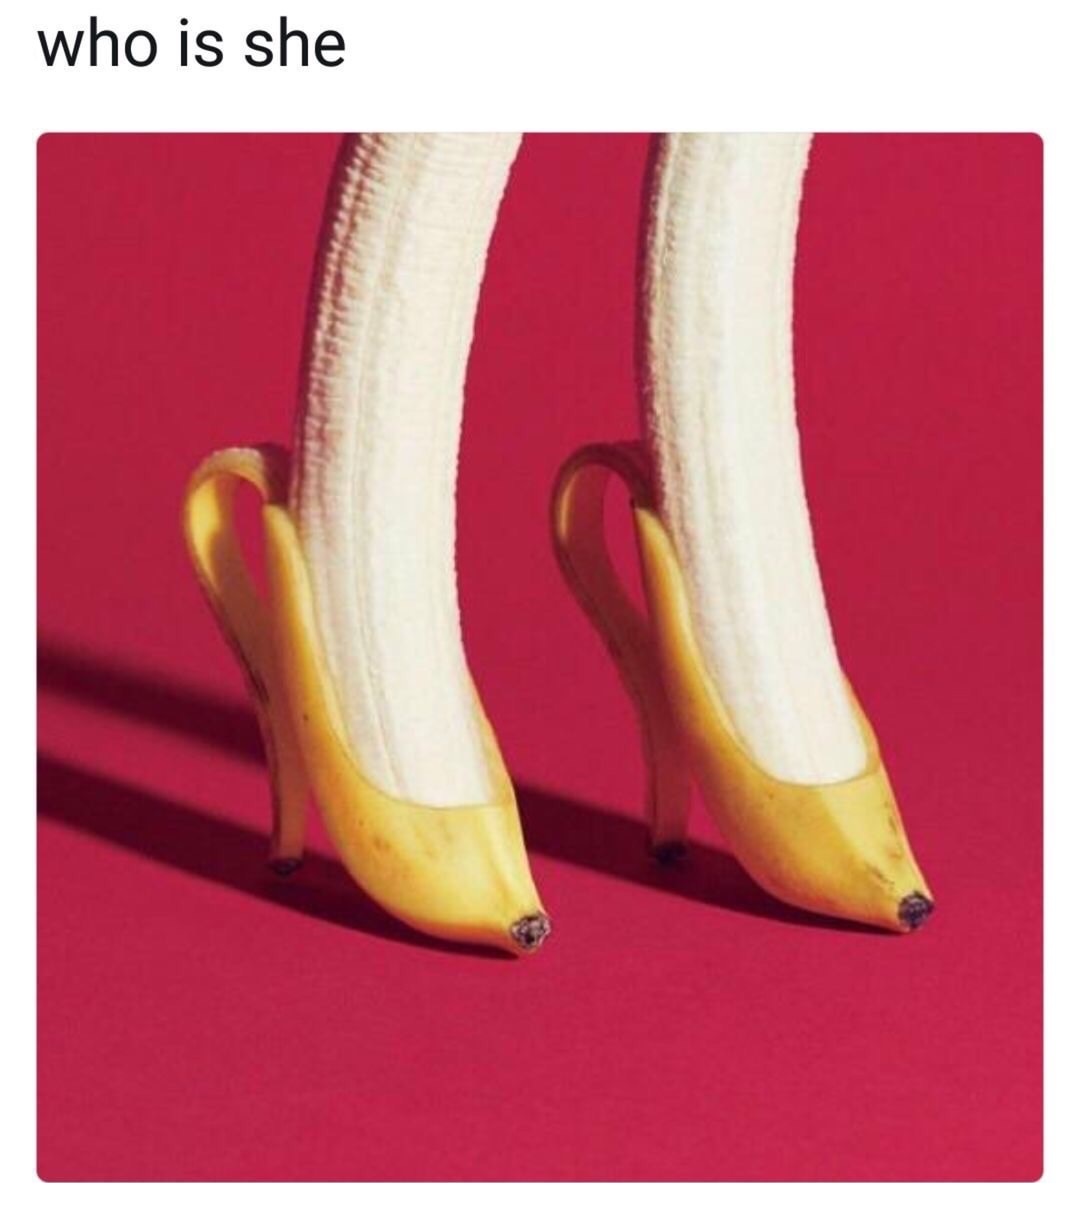 banana shoes - who is she